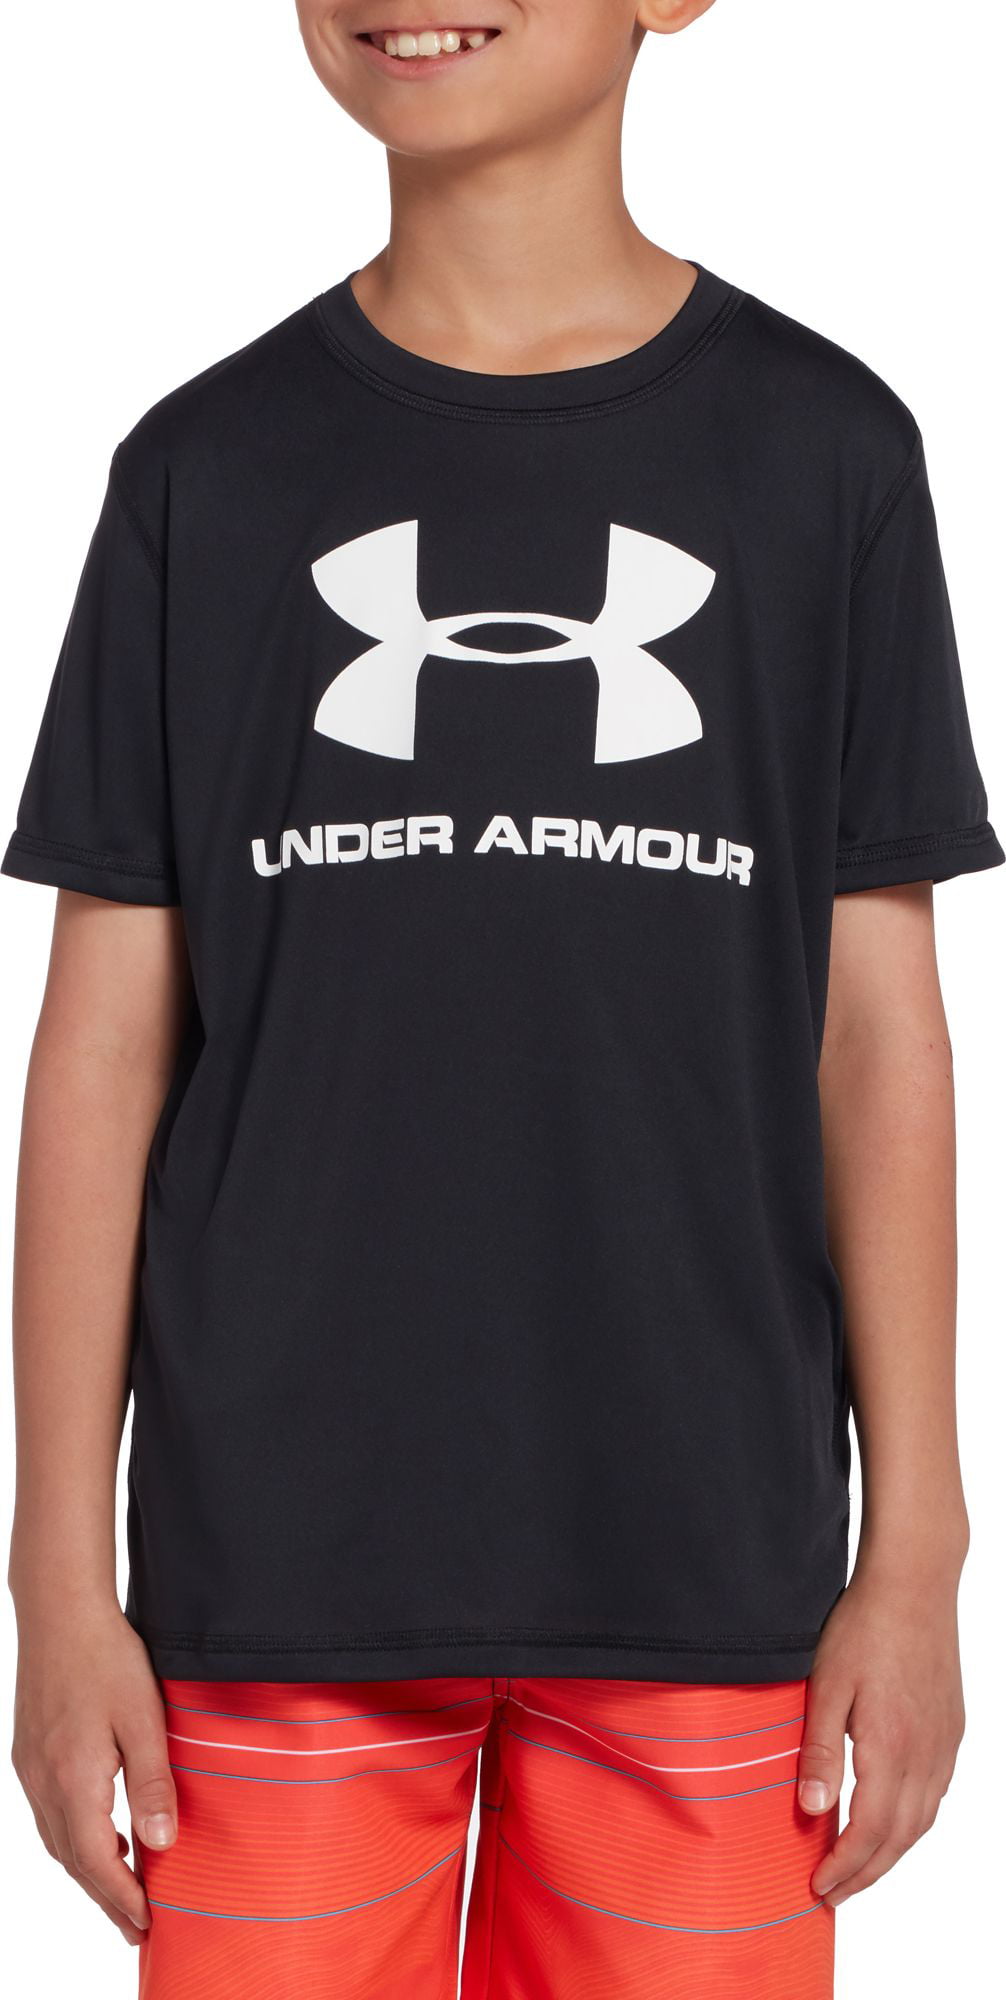 Under Armour - Under Armour Boys' Big Logo Short Sleeve Rash Guard ...